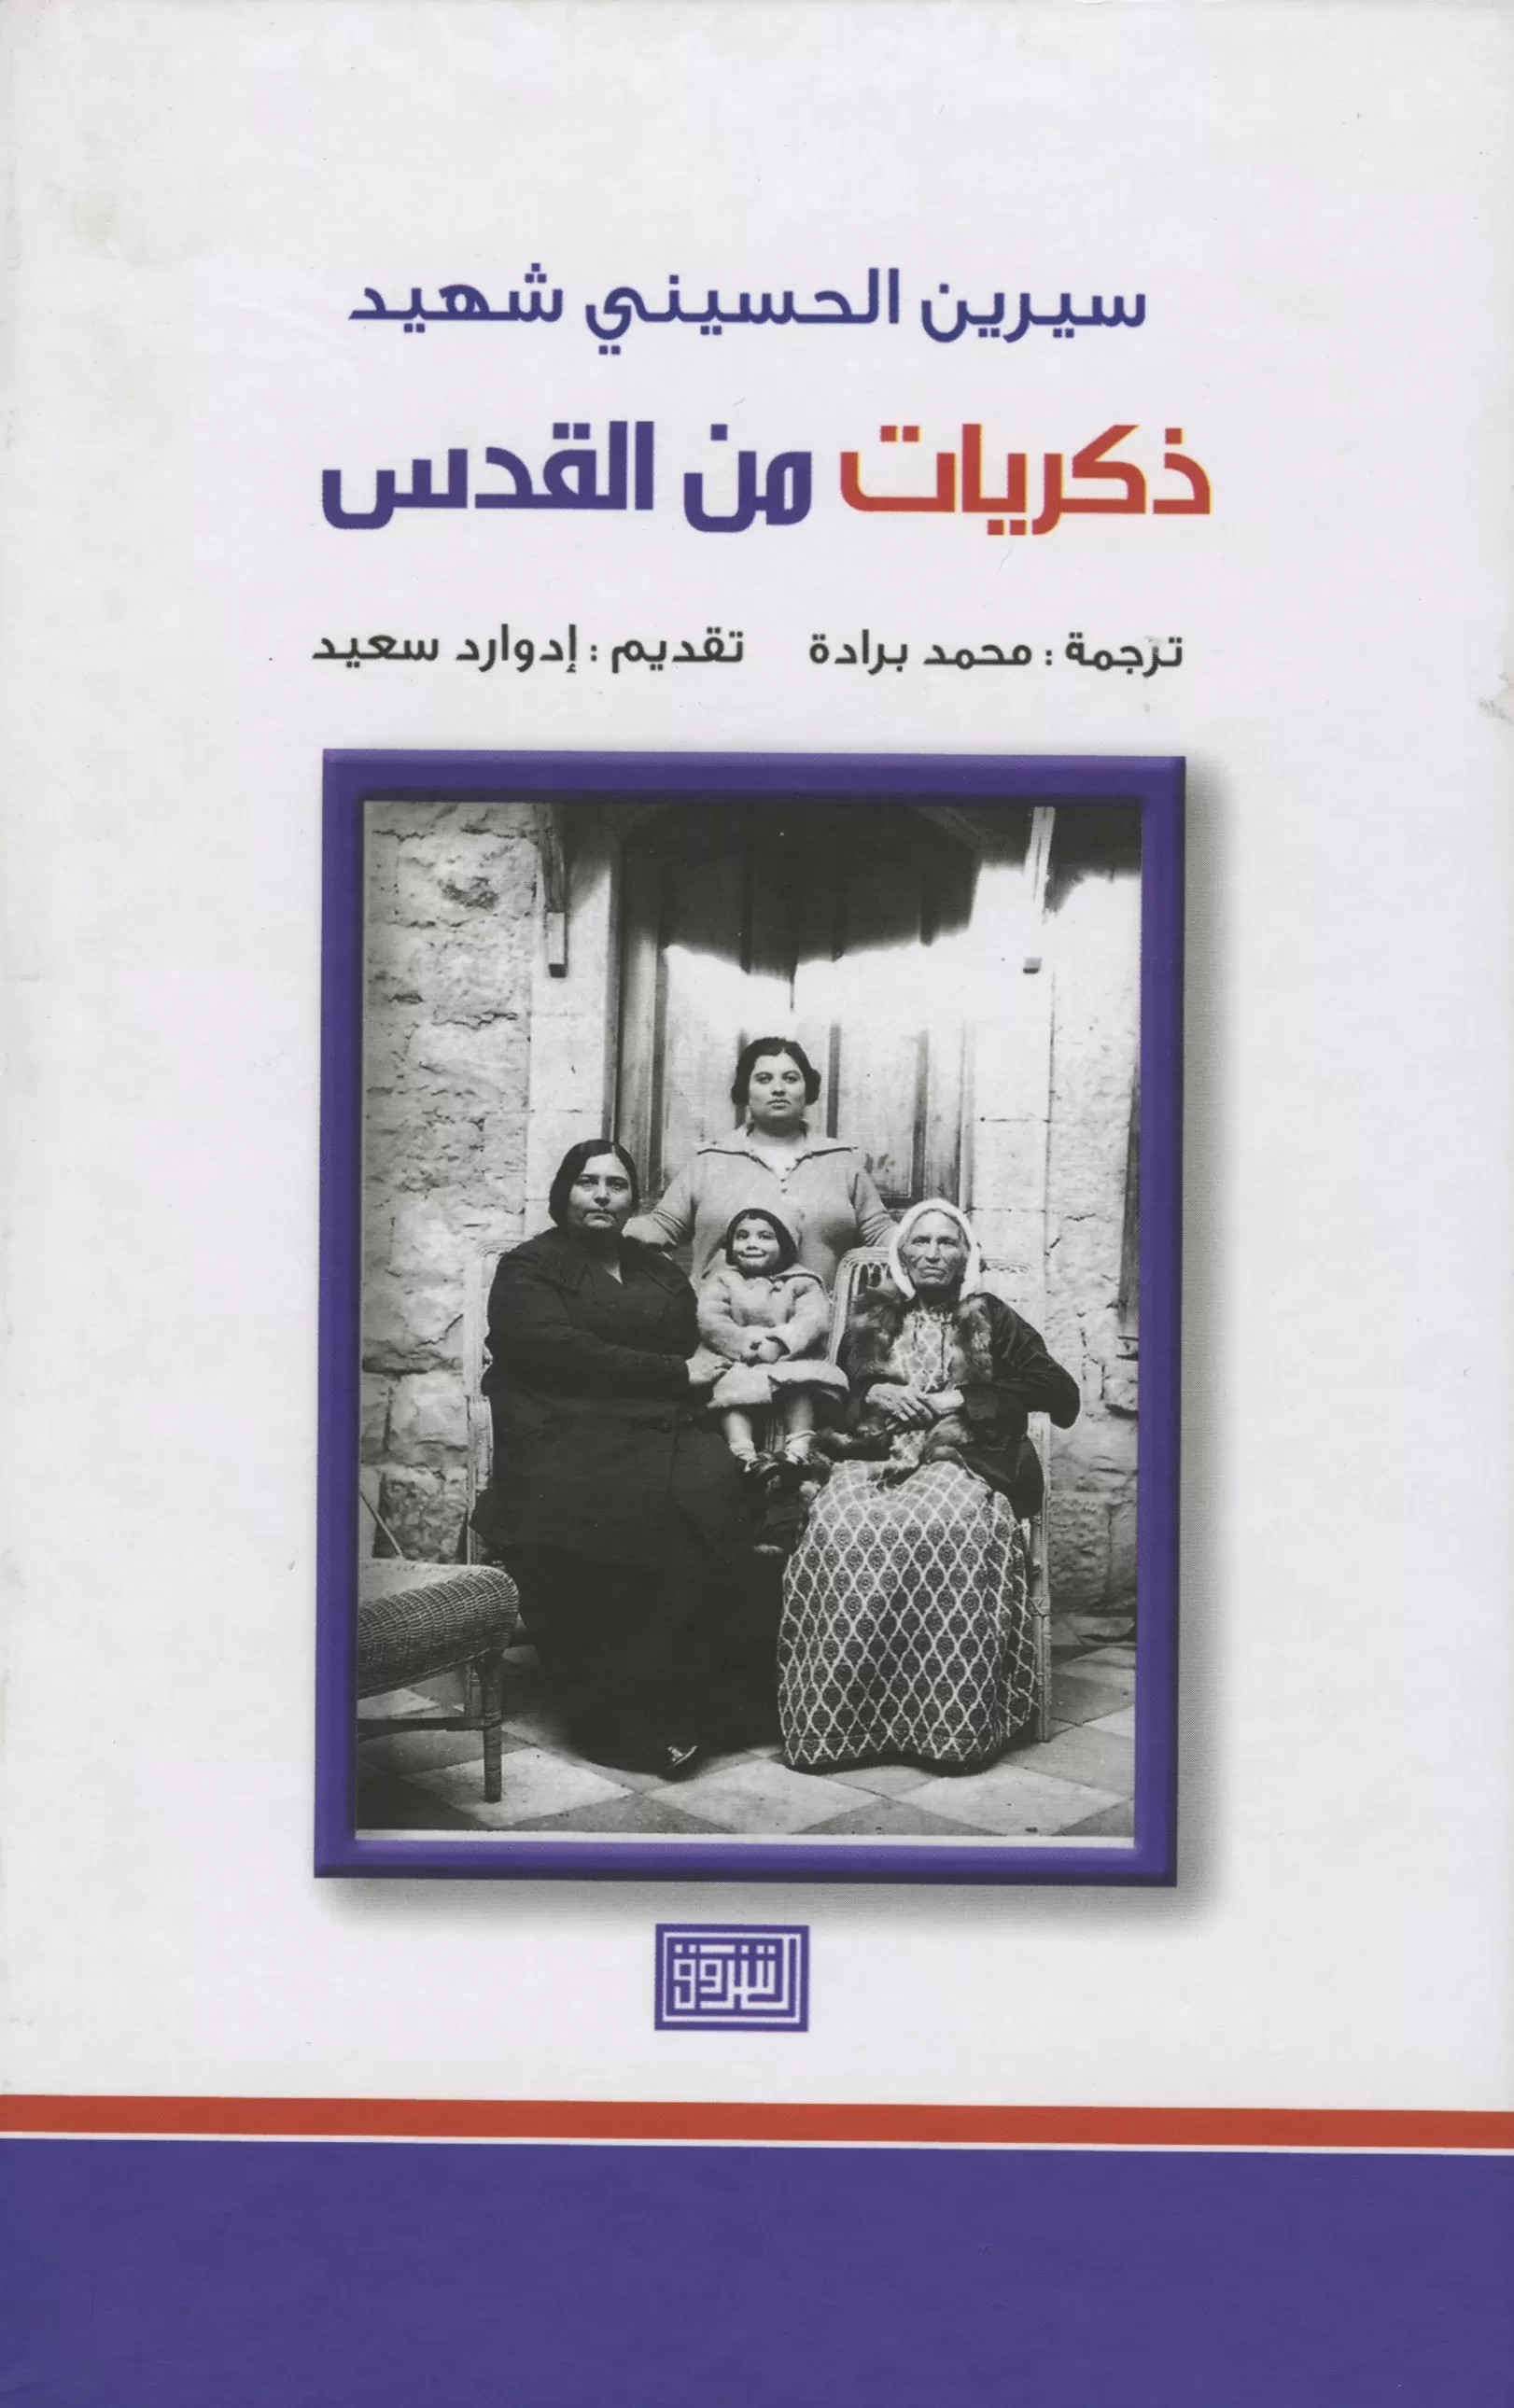 Book cover "Jerusalem memories"